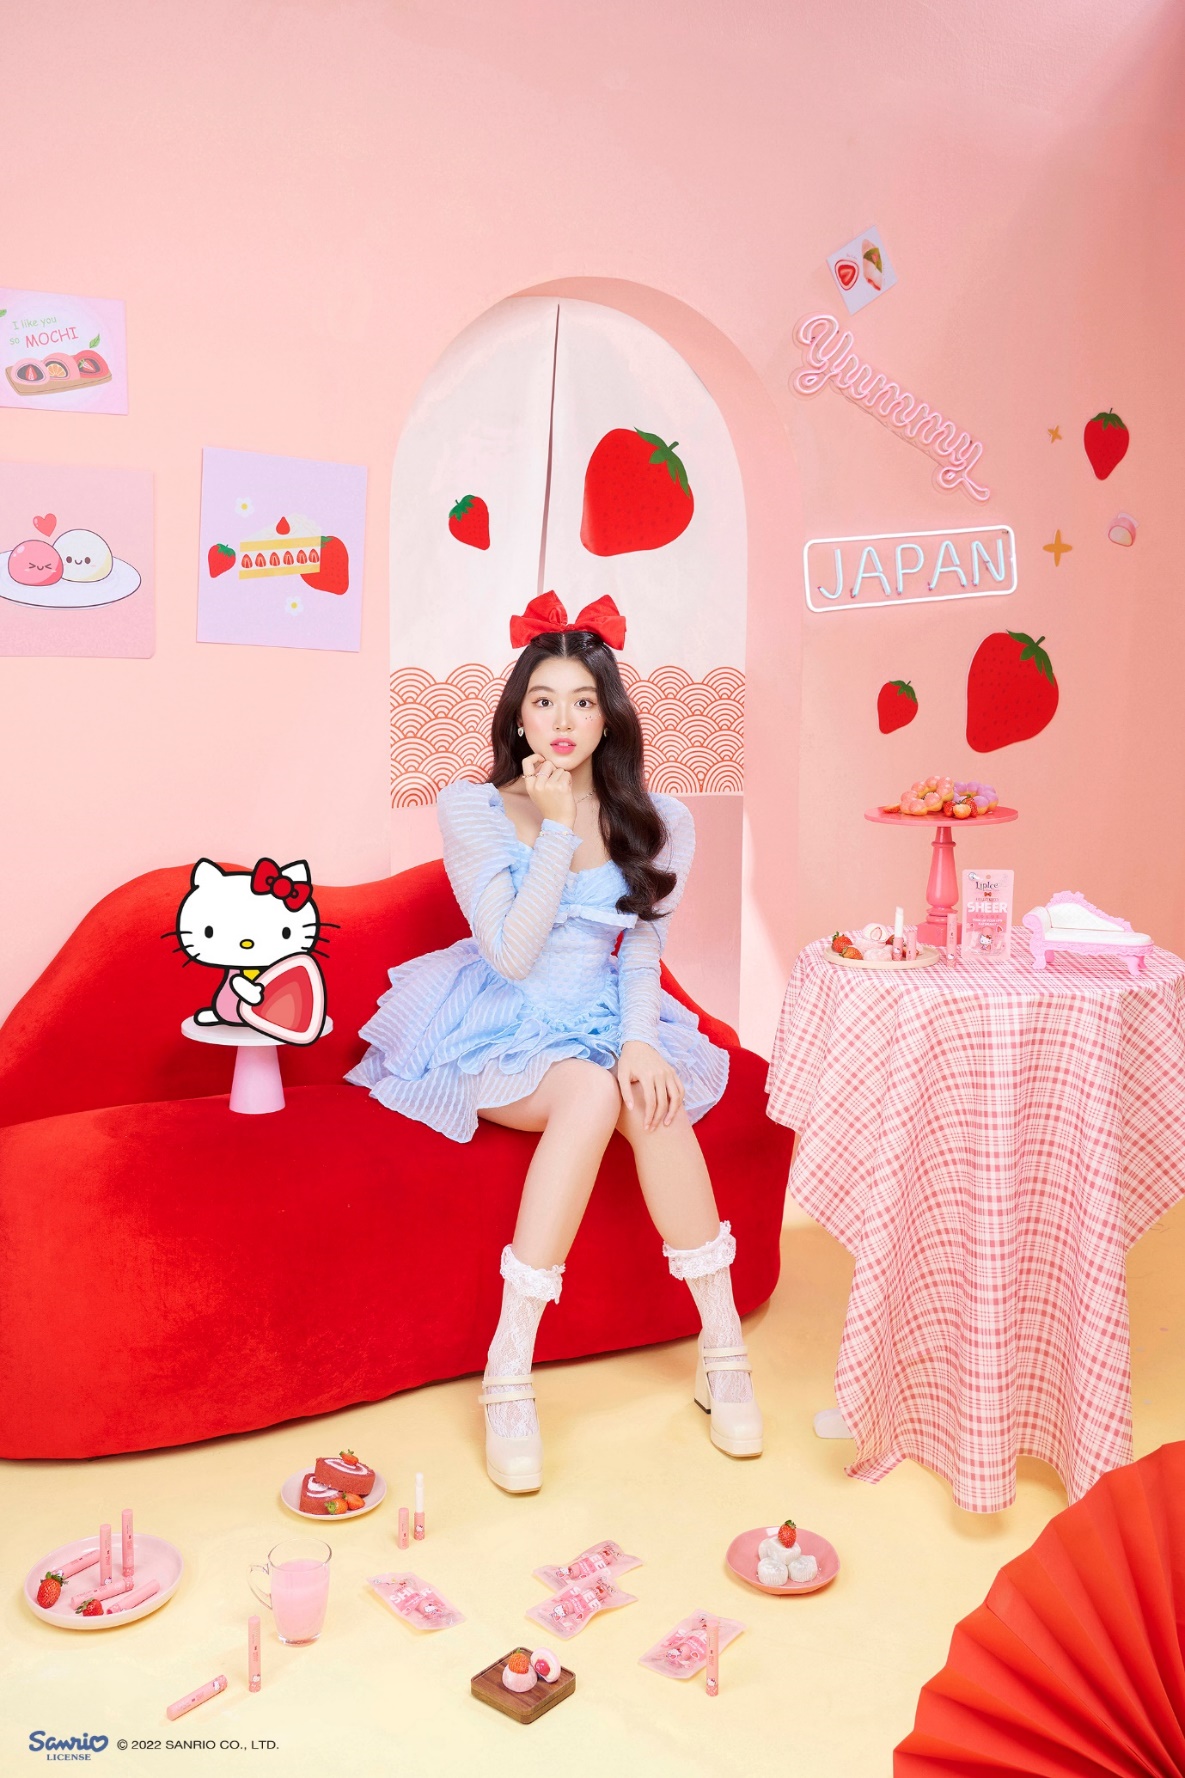 Nàng Lọ Lem nhà Quyền Linh gây sốt với loạt hình lấy cảm hứng từ Hello Kitty - Ảnh 7.